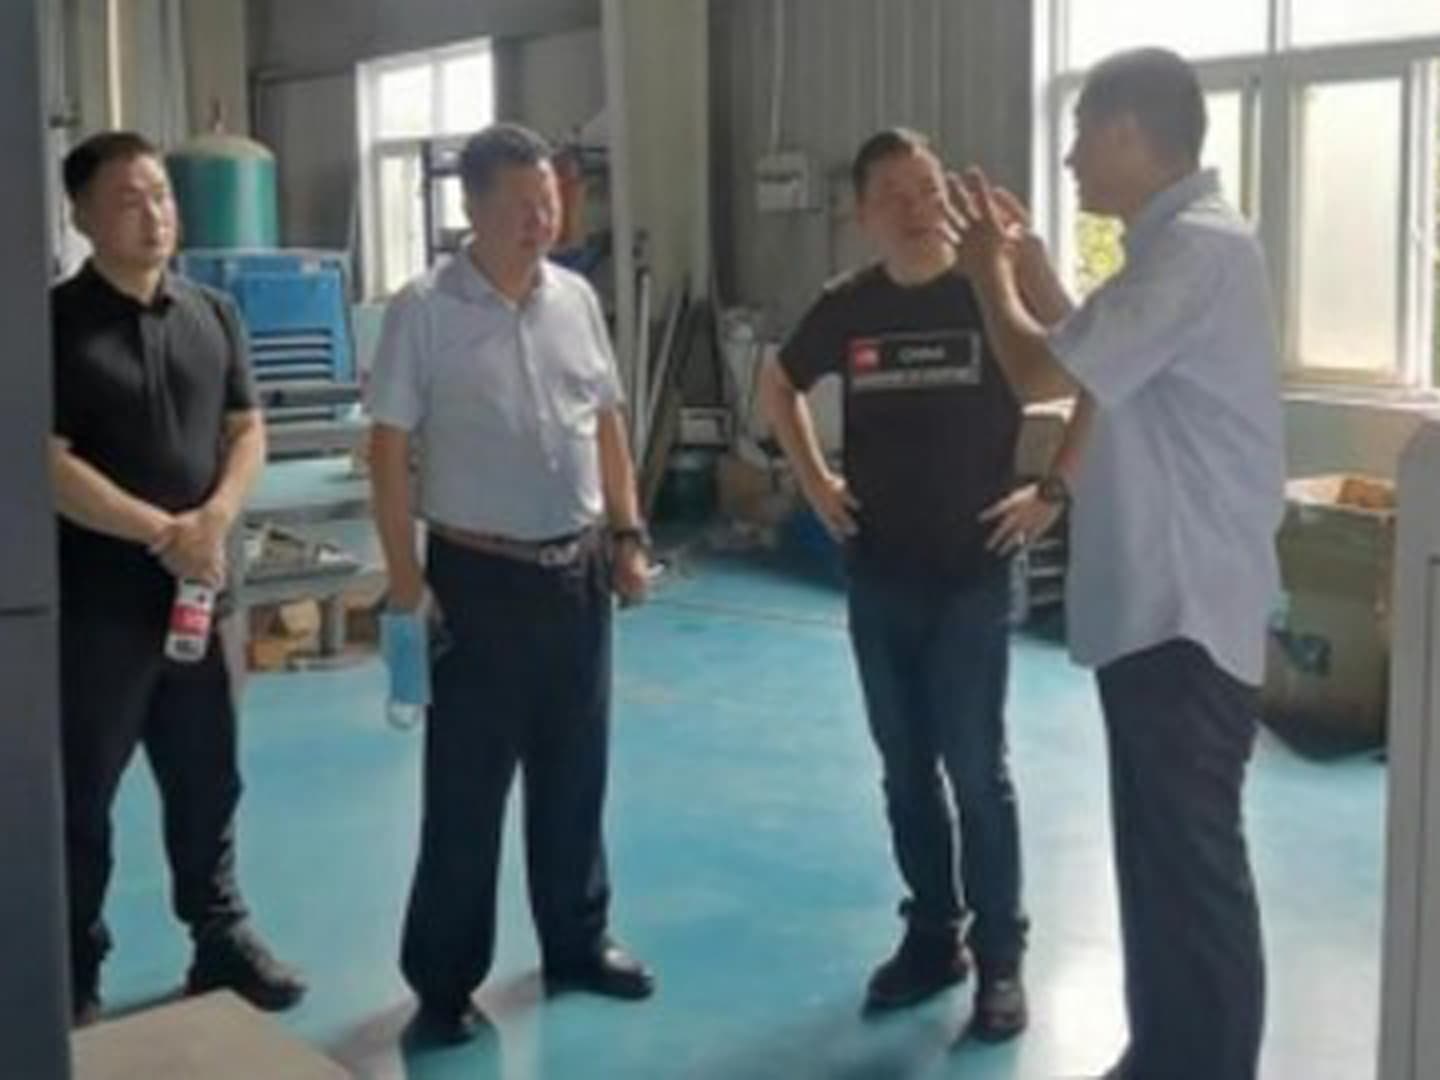 Известные предприятия по производству талька в городе Гуйлинь провинции Гуанси посетили и осмотрели сортировочную машину с искусственным интеллектом Mingde Optoelectronics.